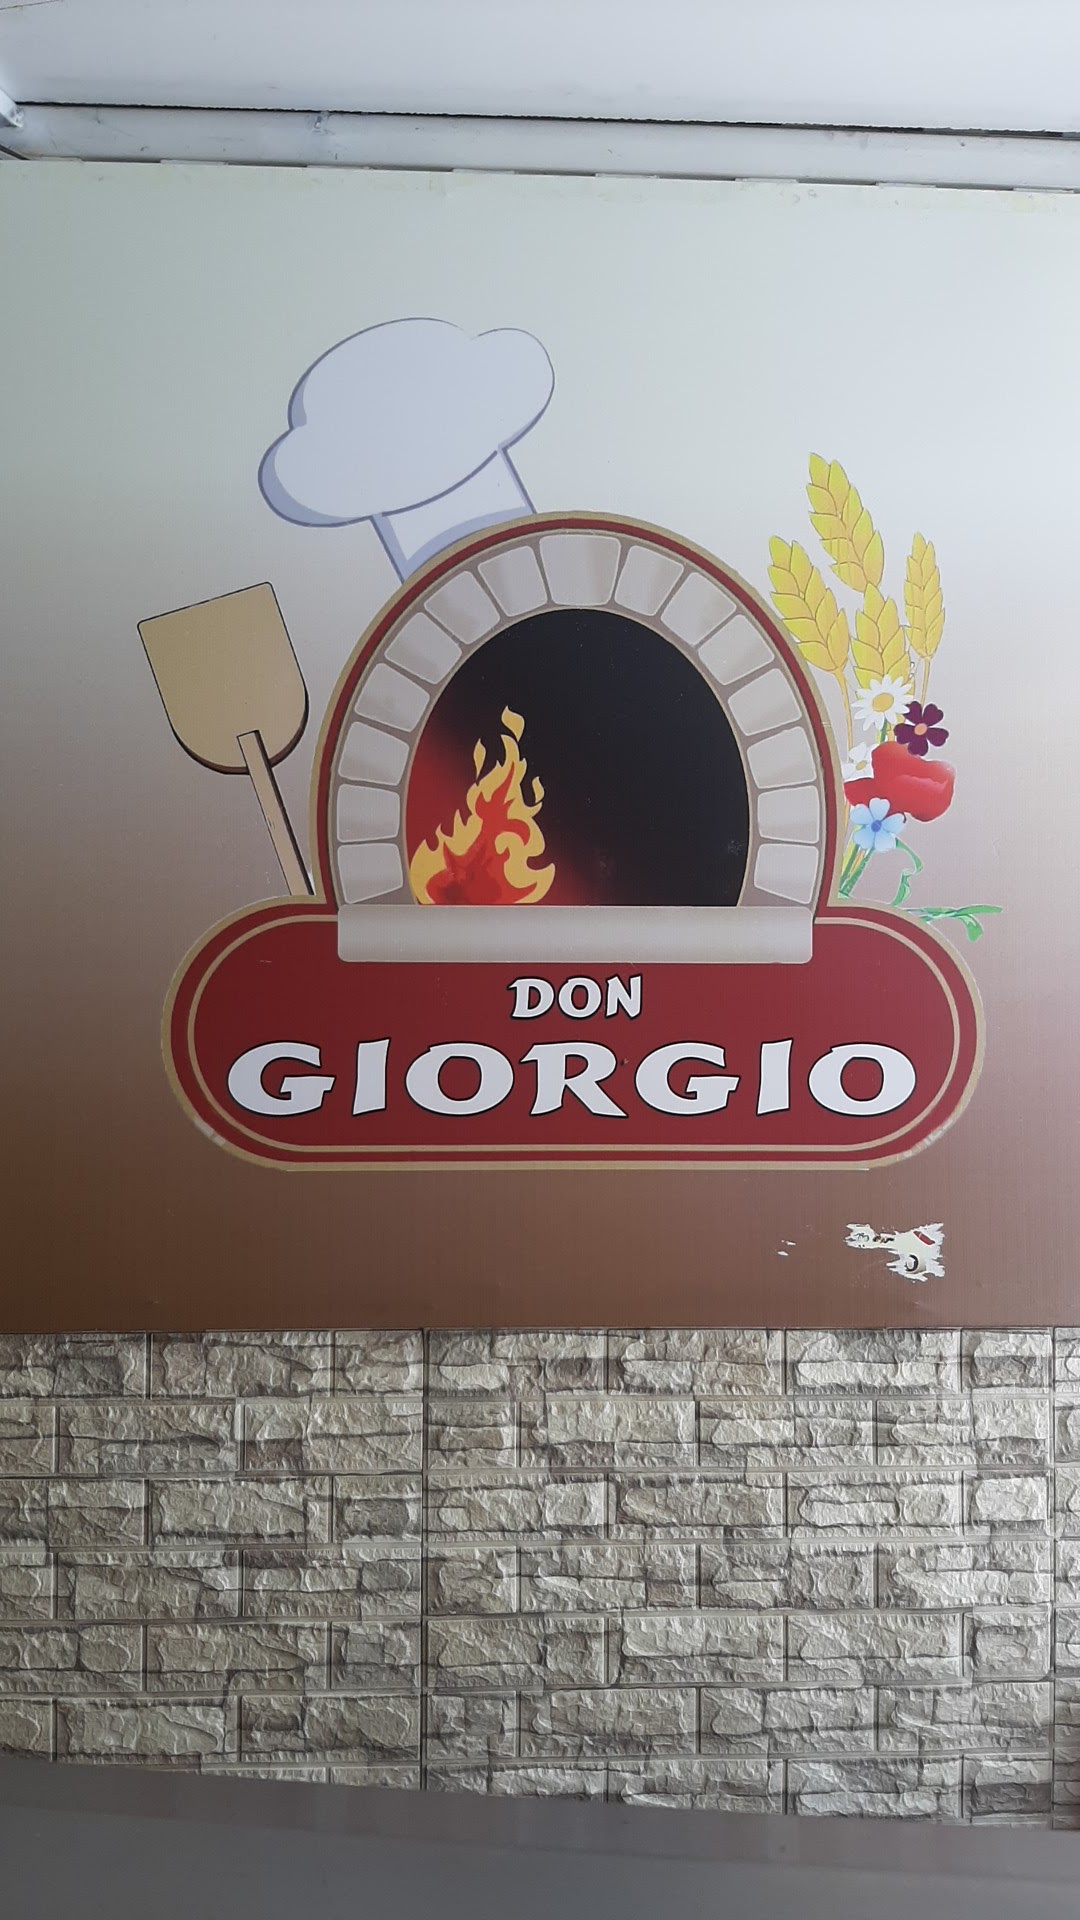 Panaderia Giorgio